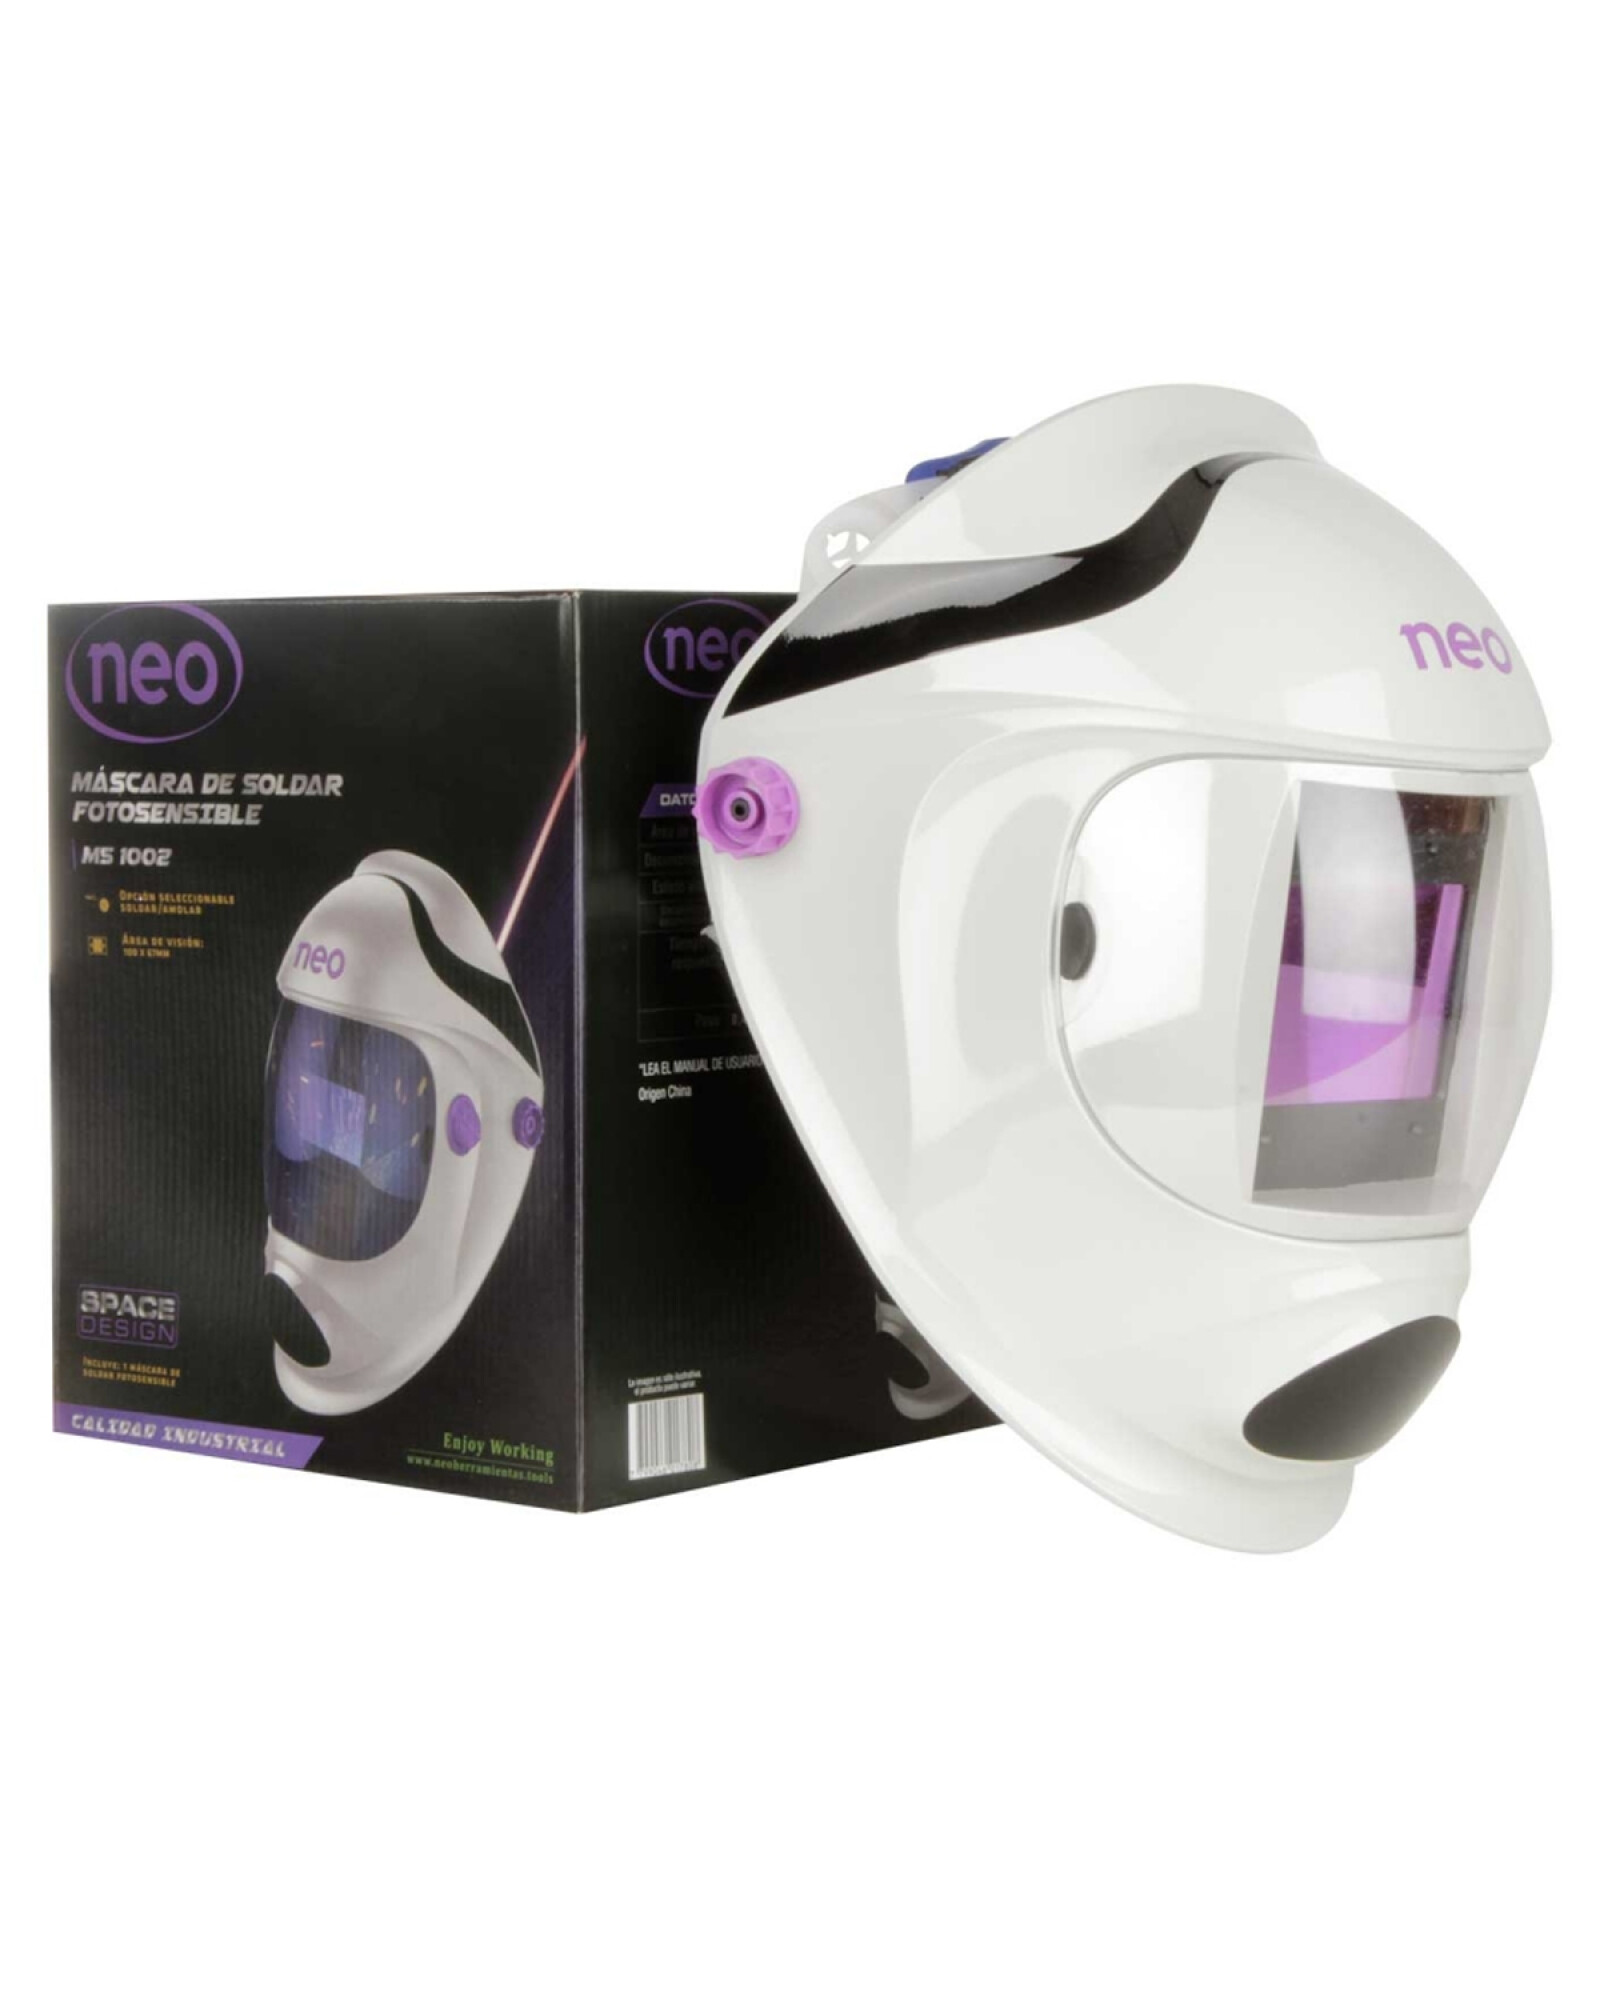 Mascara Fotosensible para Soldar Esmerilar Cortar NEO con Panel Solar y  Bateria — Electroventas